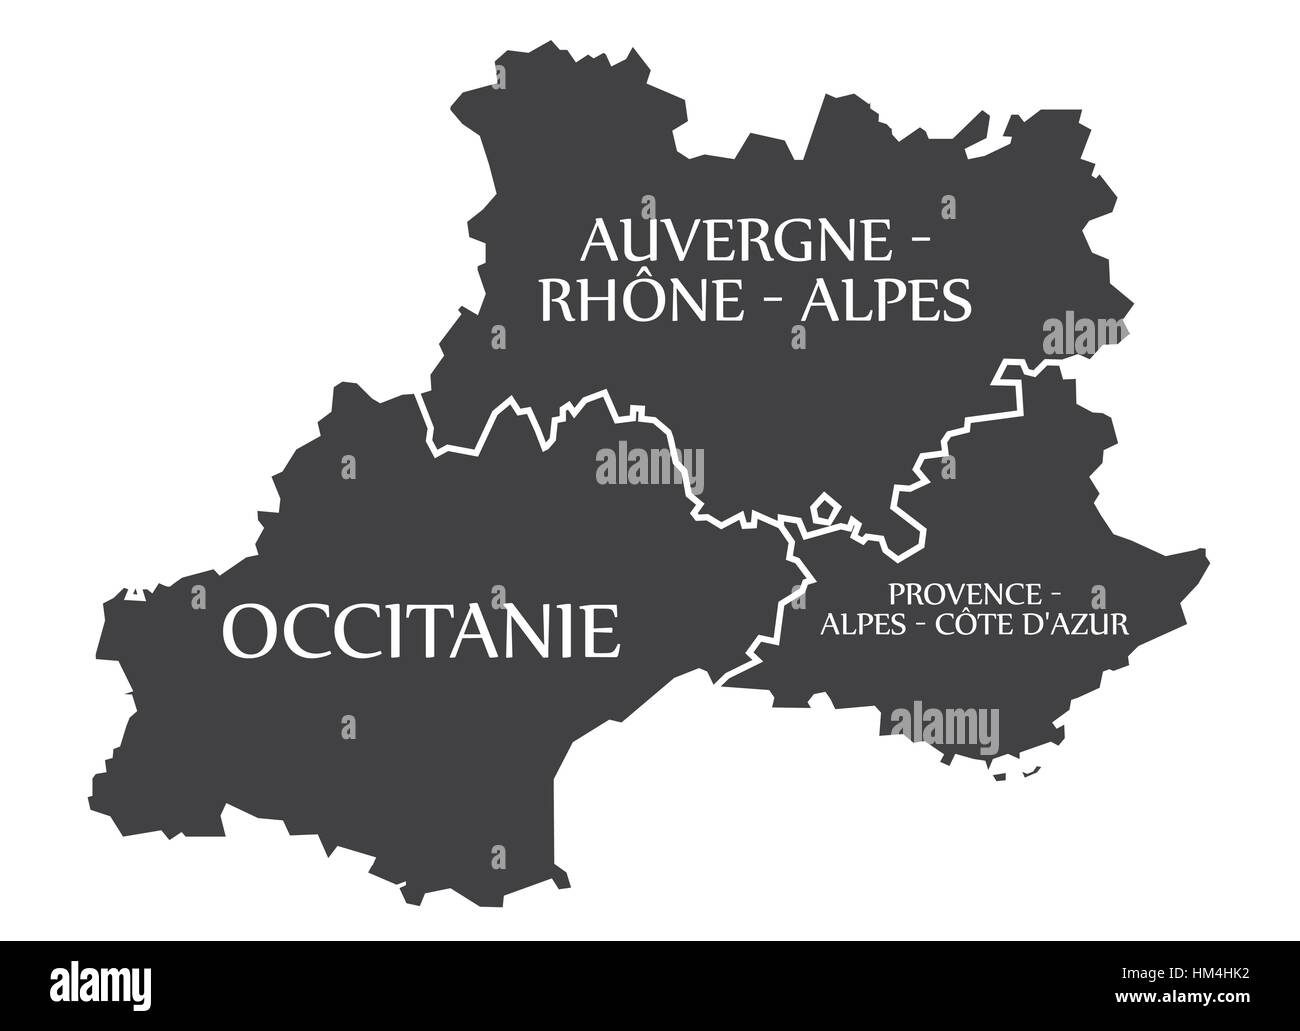 Auvergne - Occitanie - Provence - Alpes - Cote d Azur Map France illustration Stock Vector